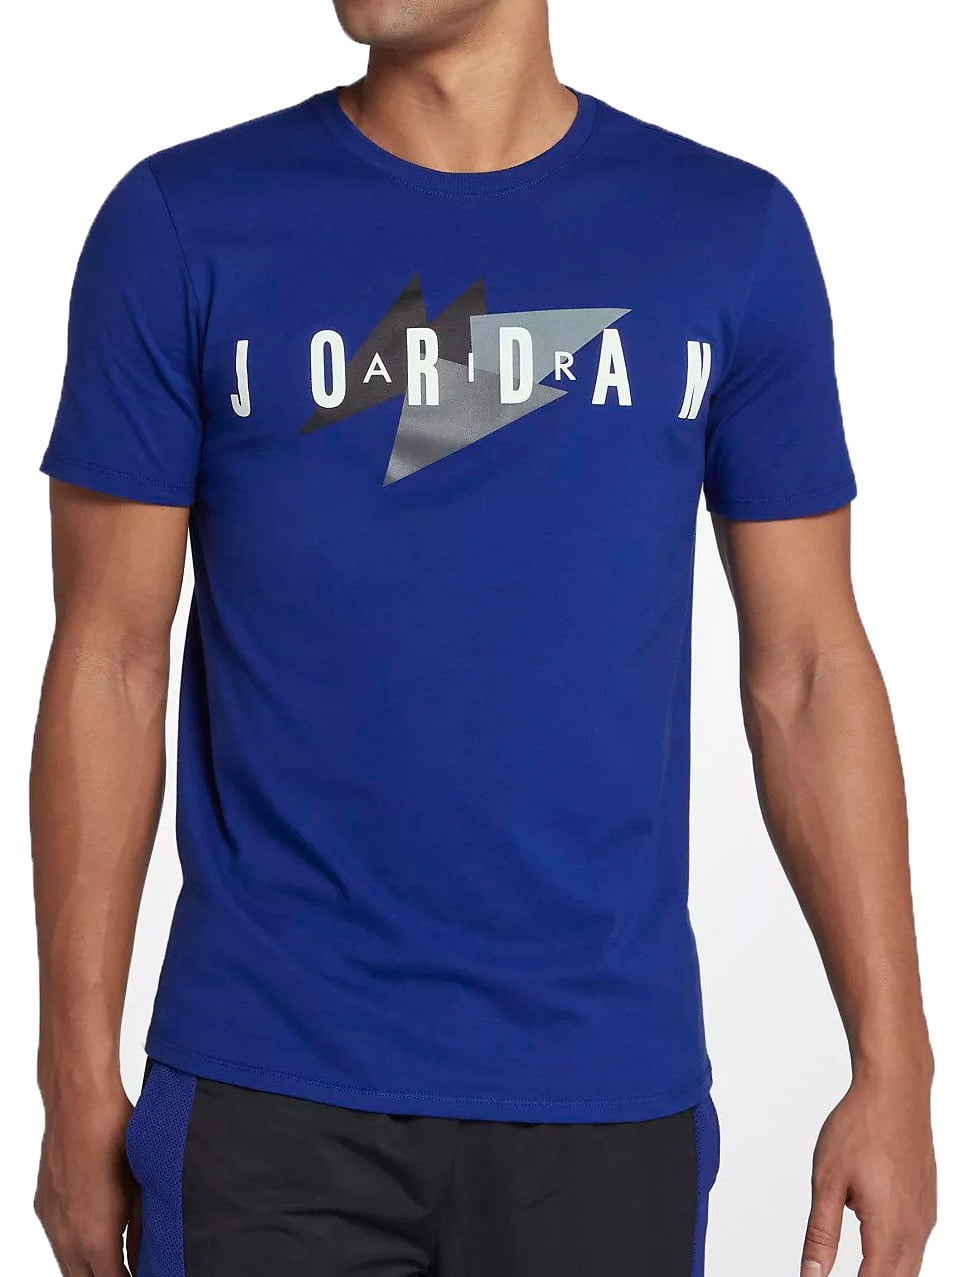 Jordan - Air Jordan Brand 1 Men's Sportswear T-Shirt Deep Royal Blue